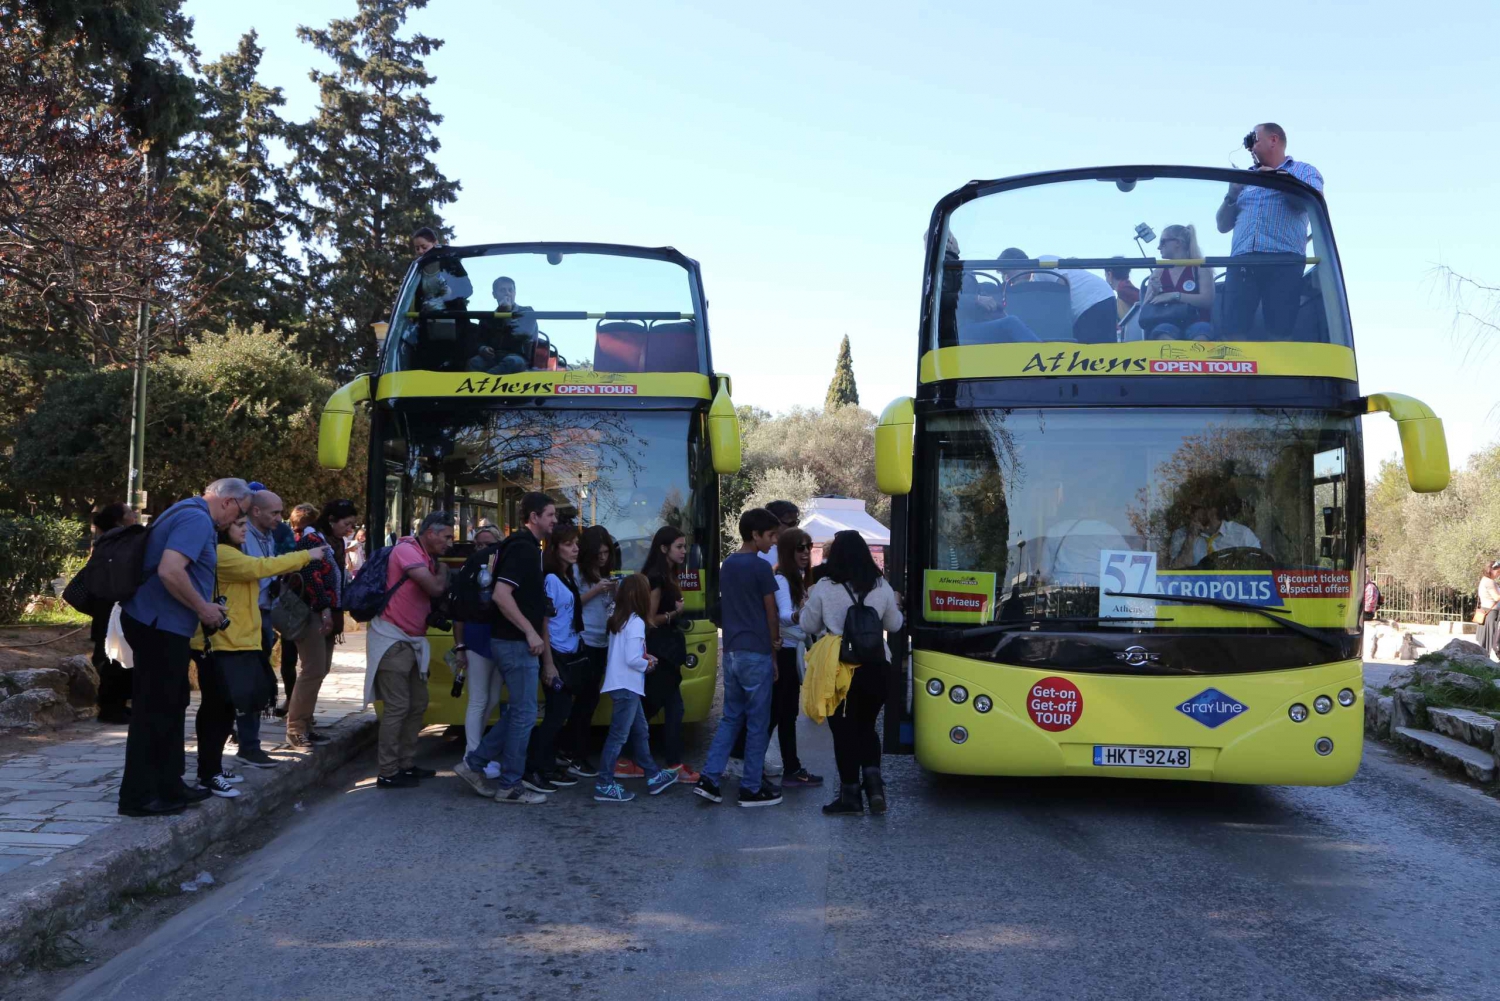 Athen: Hop-on-hop-off-bus og solnedgangstur til Kap Sounion